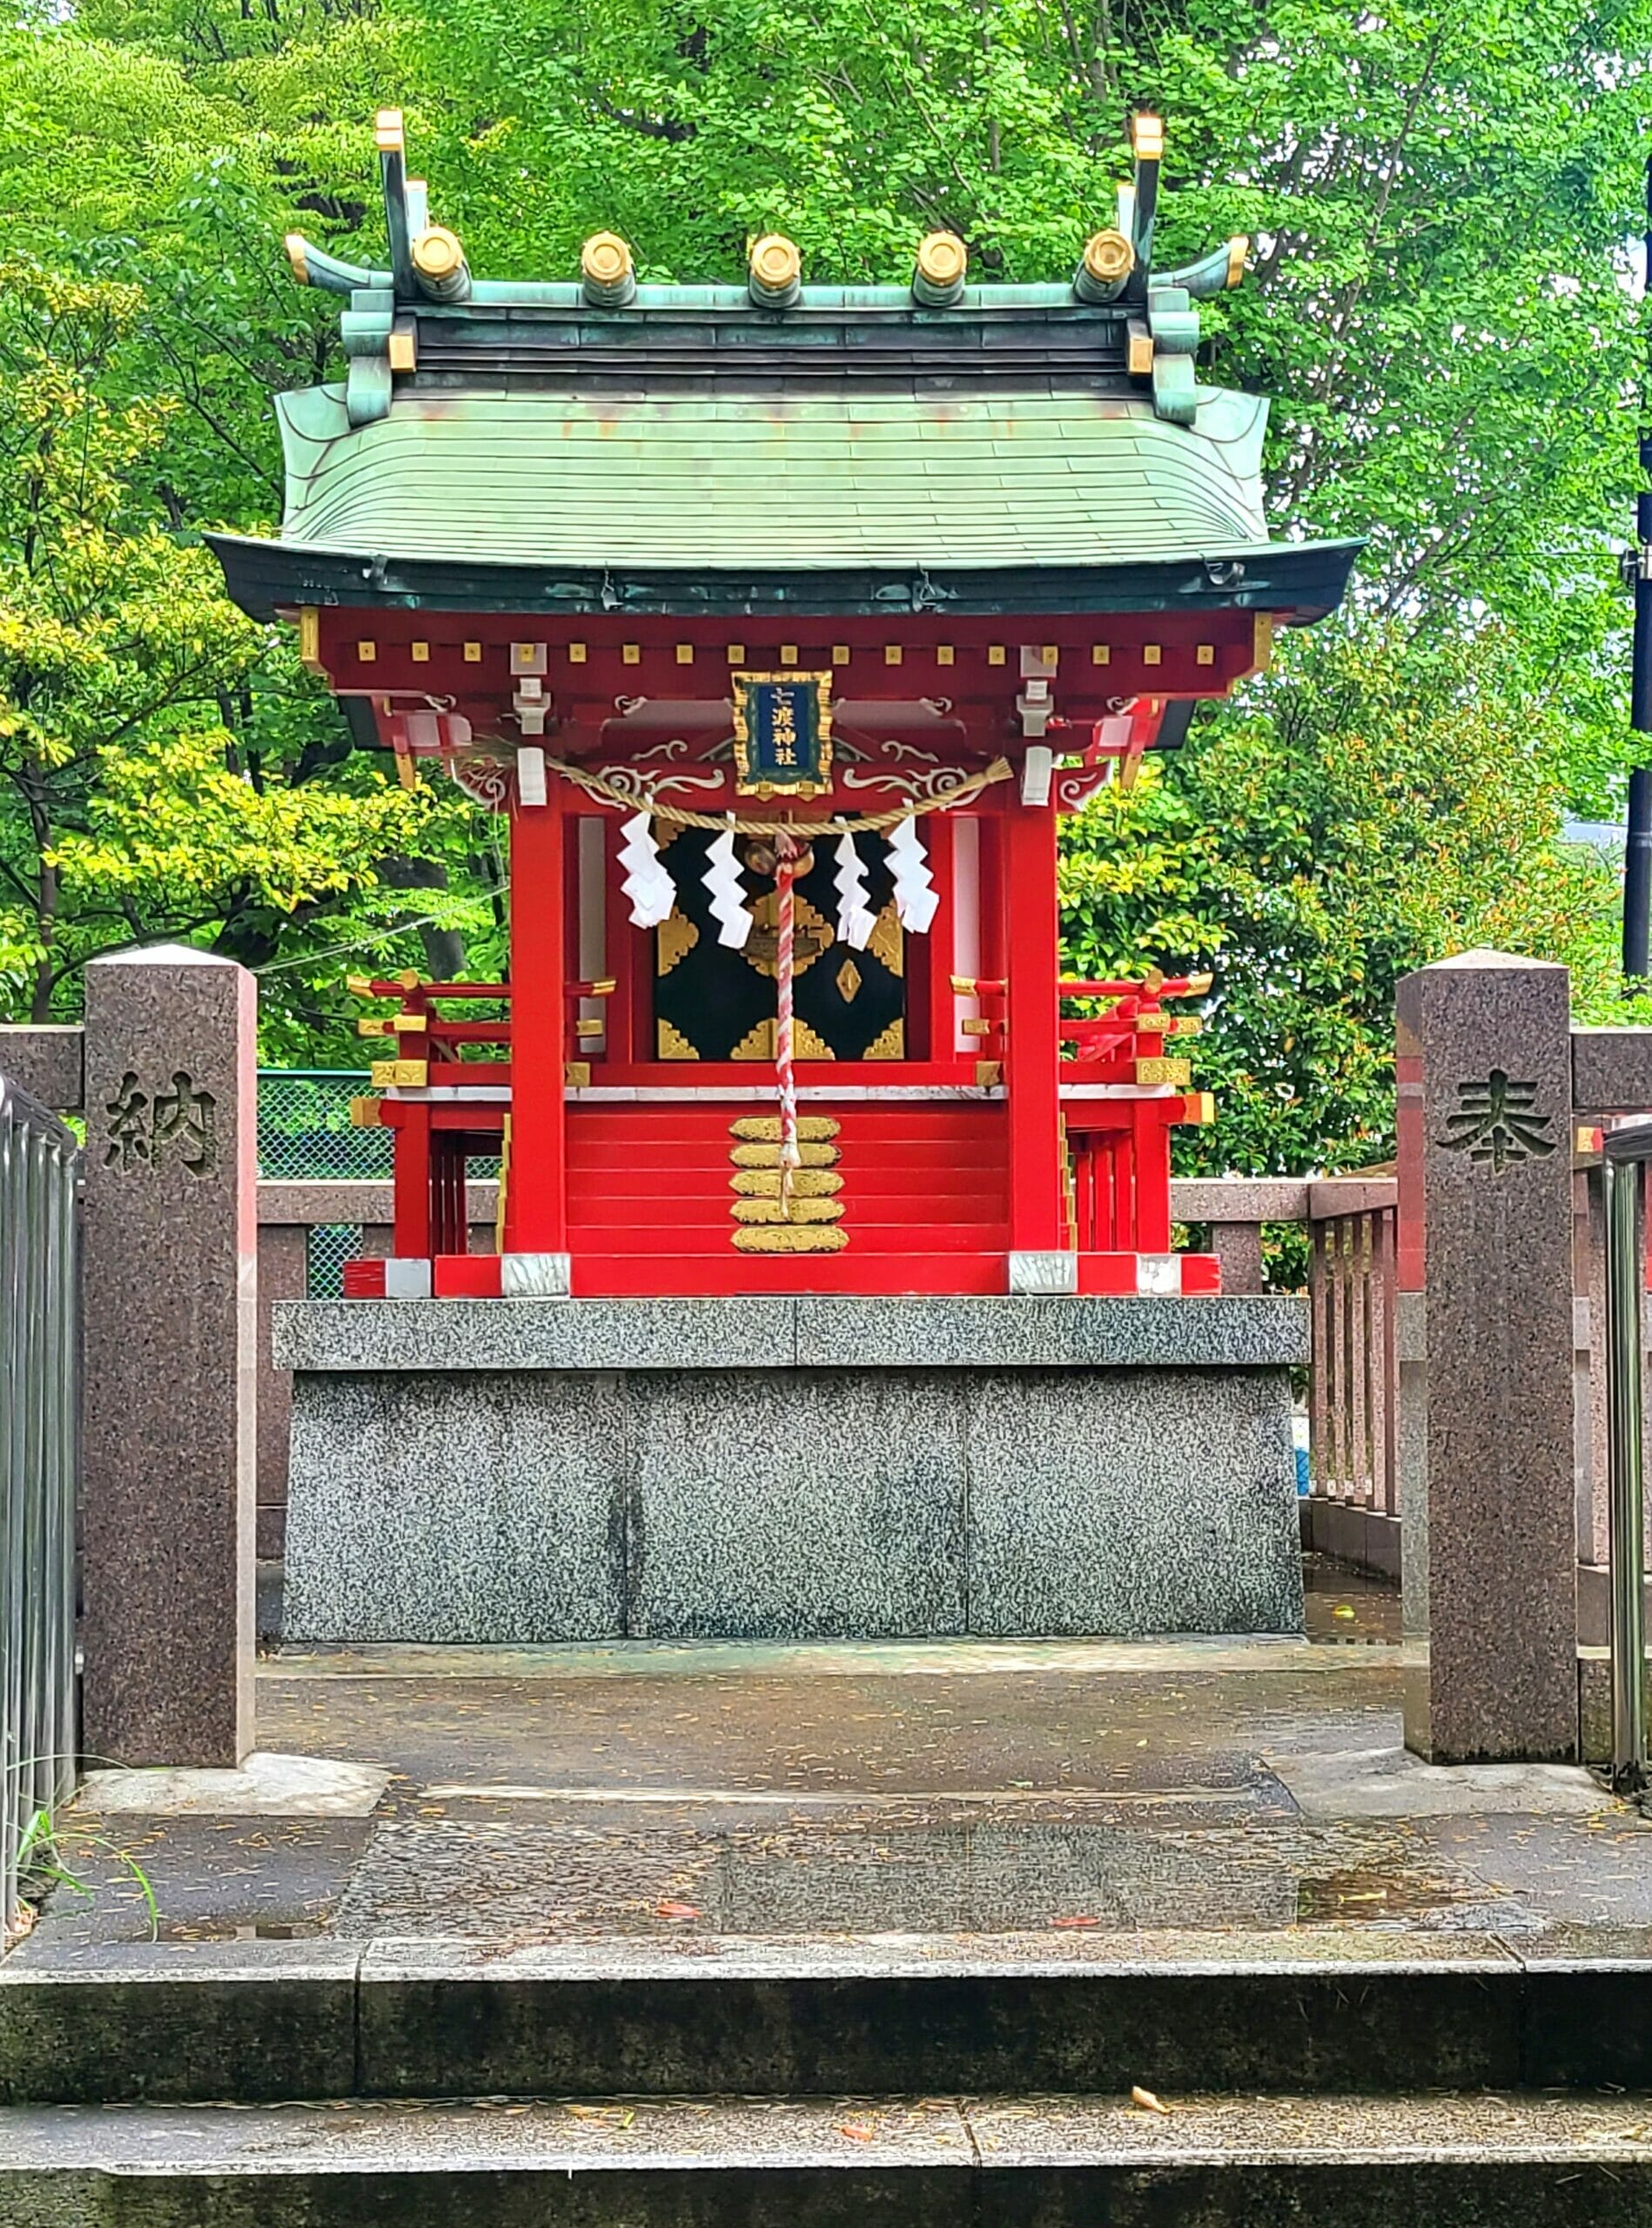 富岡八幡宮の七渡神社